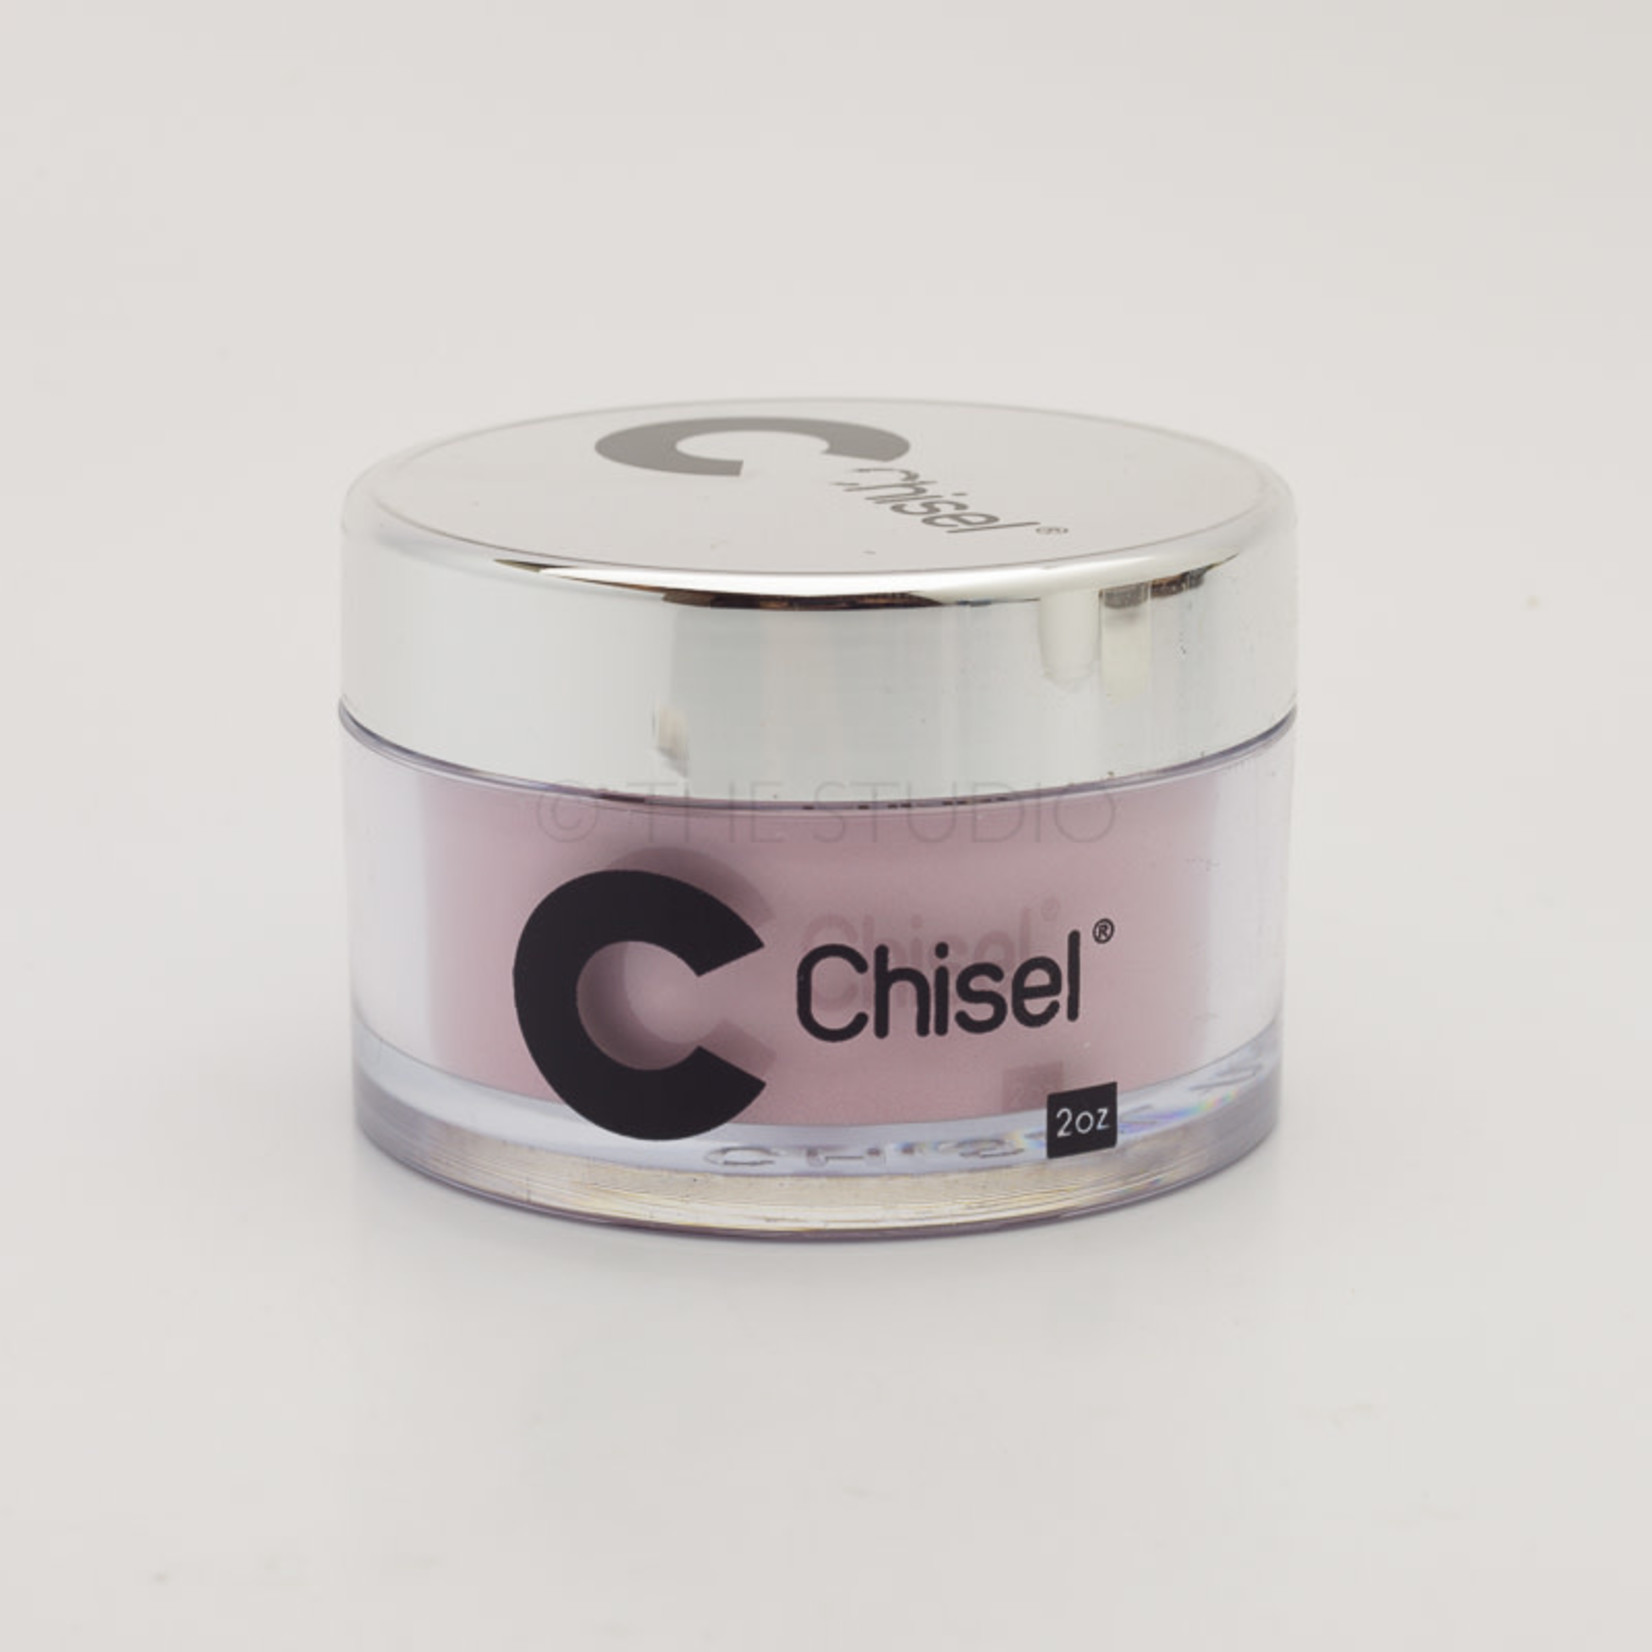 Chisel Chisel - Solid 014 - AIO Powder - 2 oz